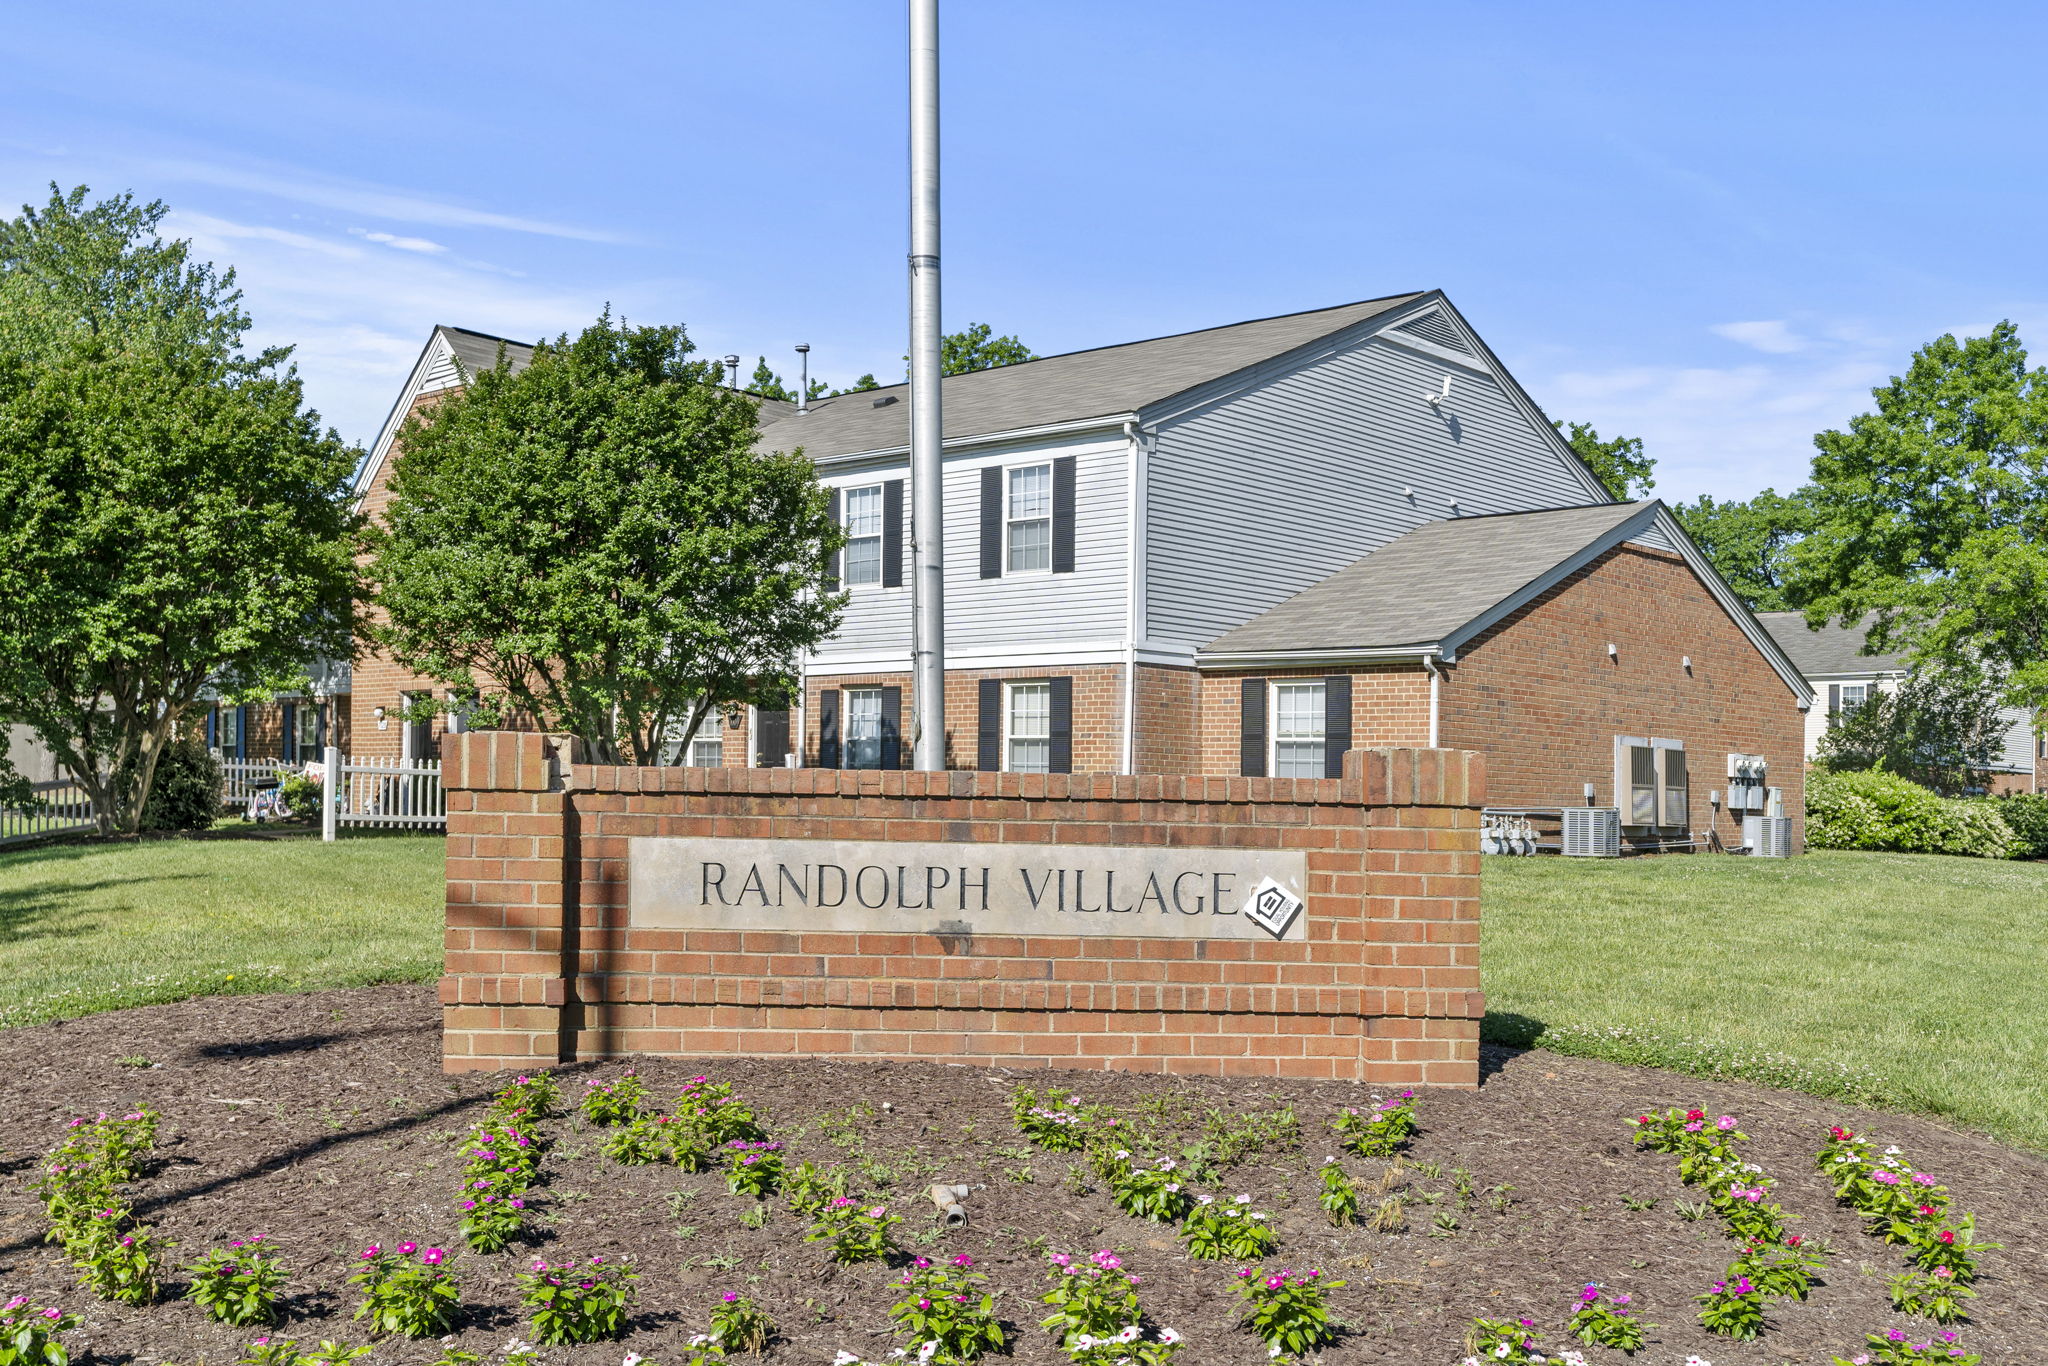 Randolph Village Sign